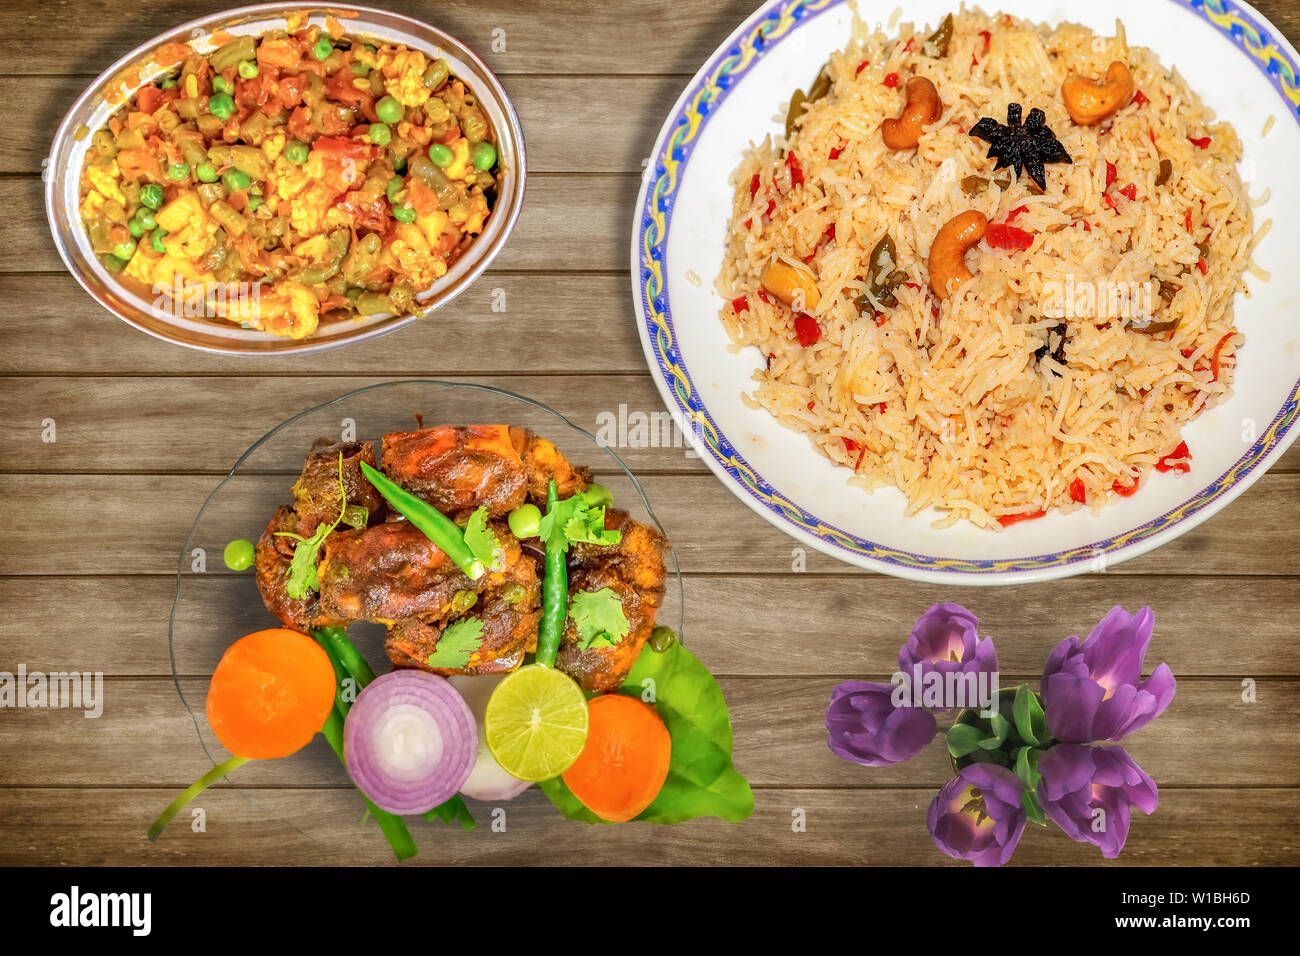 Leckeres indisches Essen Mahlzeit von gebratener Reis mit gemischtem Gemüse zusammen mit Red Hot scharf gewürzten Hummer Teller garniert mit Salat und würzig Chili Huhn Stockfoto